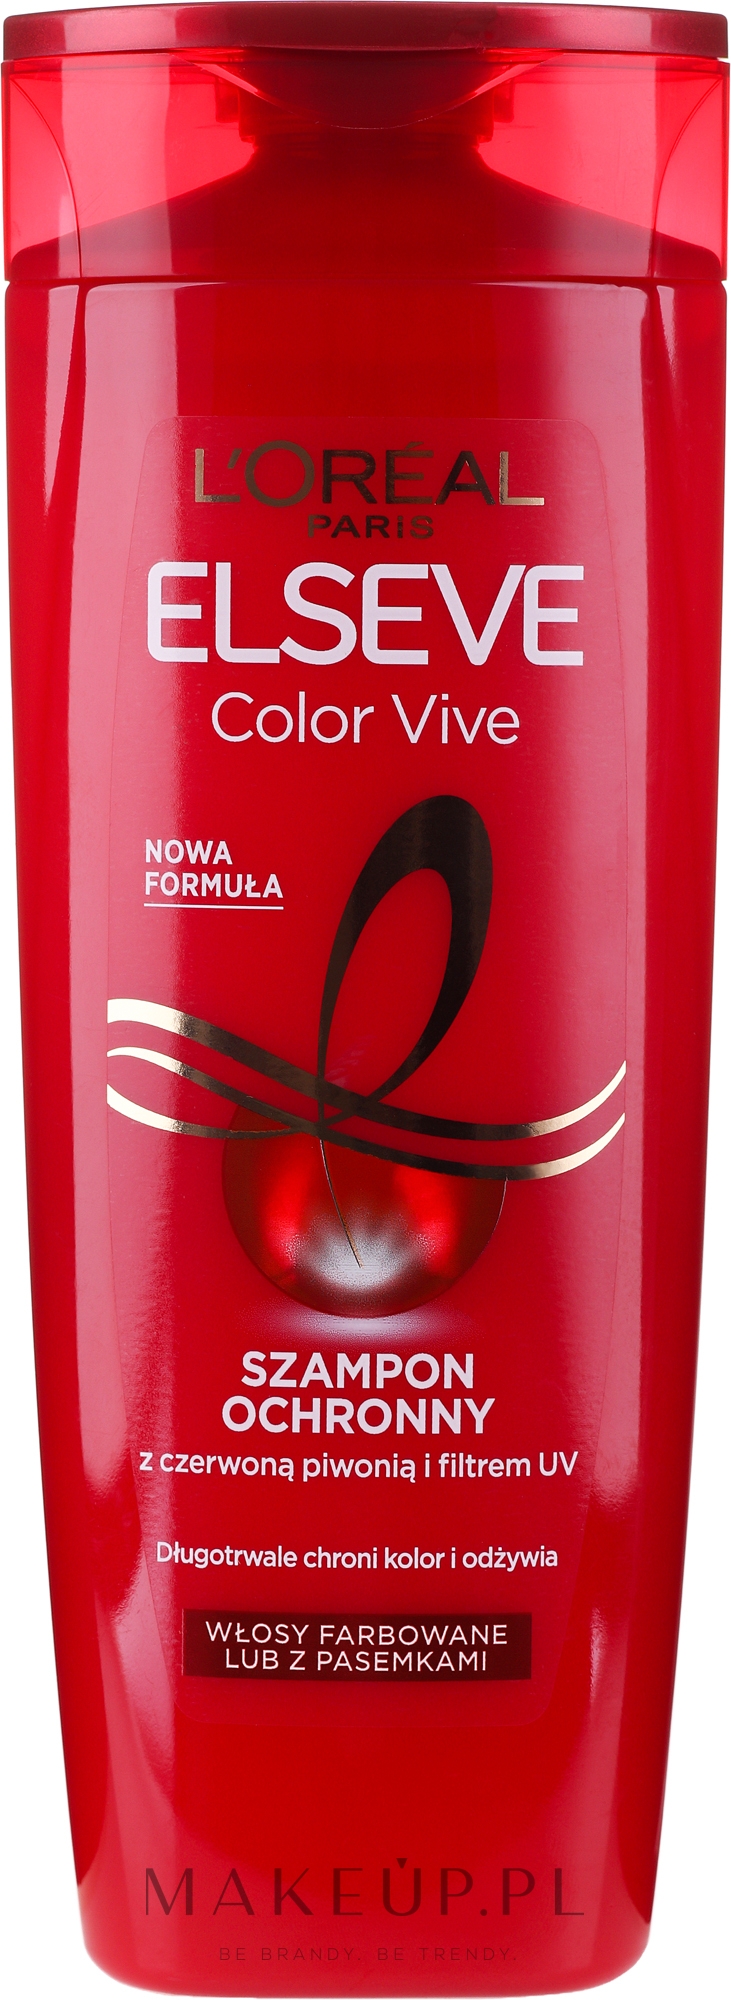 opinie szampon lreal z witaminami do włosów farbowanych opinie